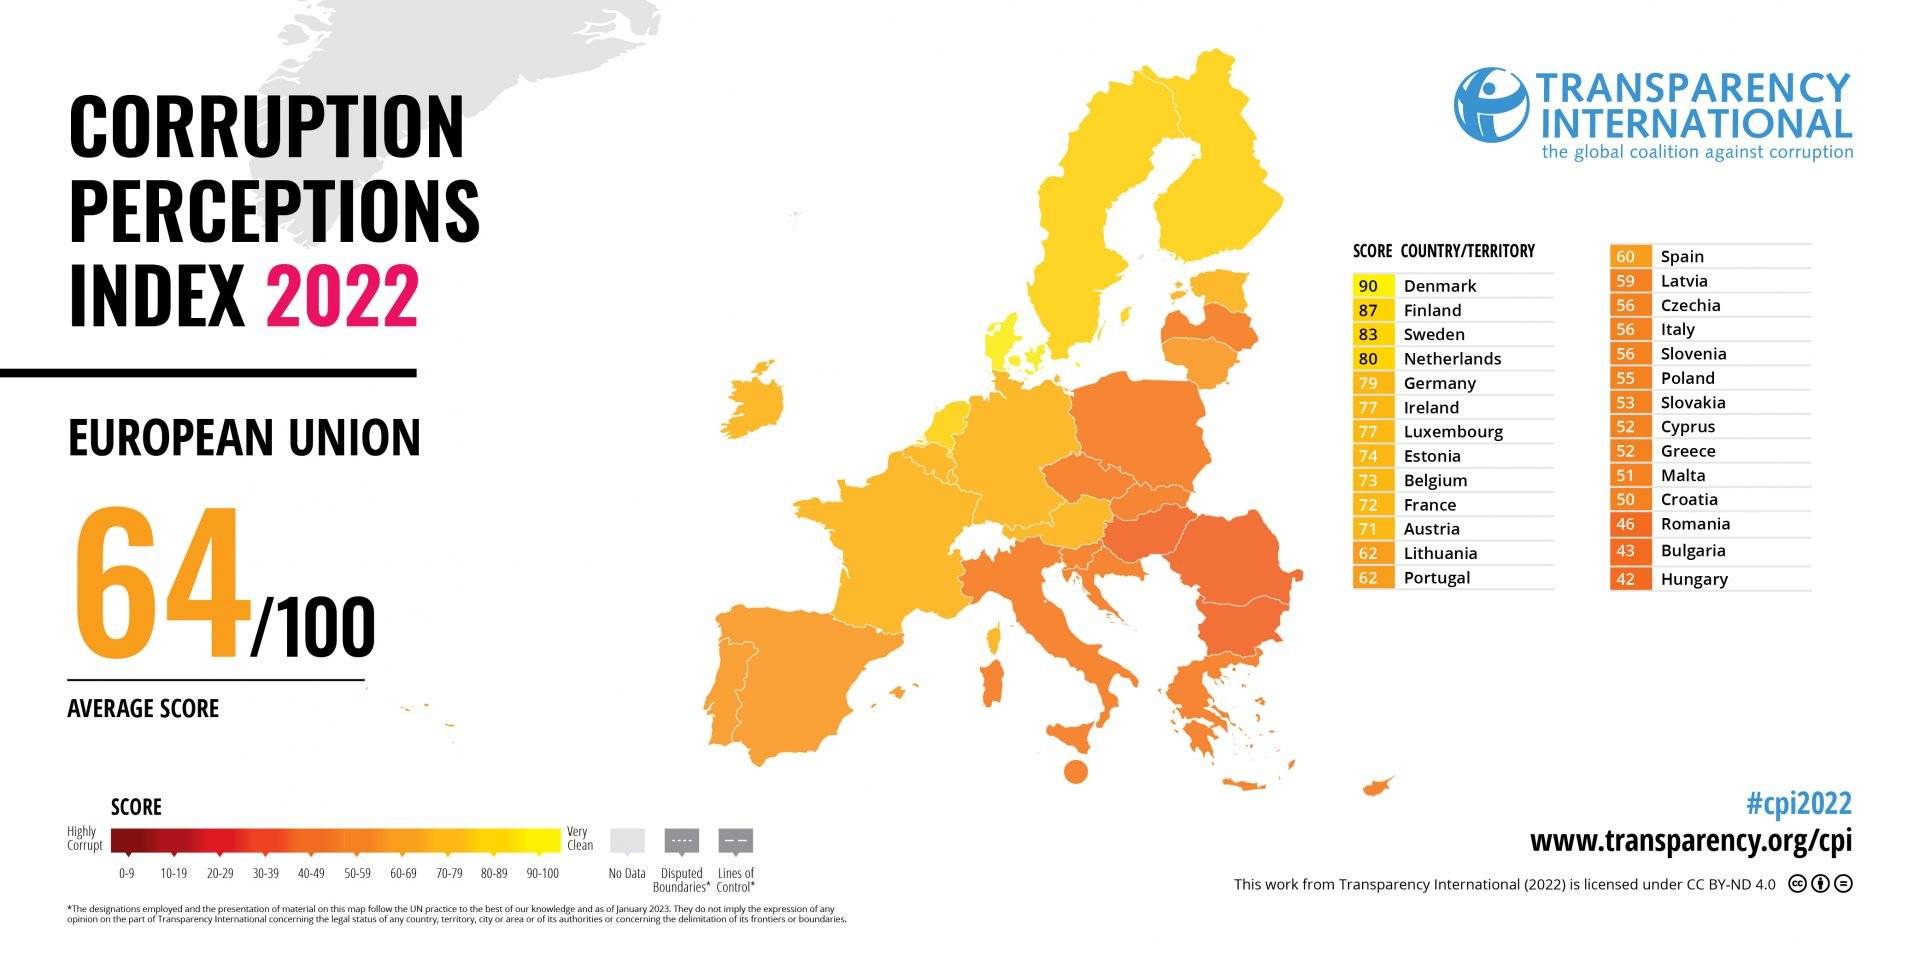 Mapa Europy pokazująca skłonnośc do korupcji: na wschodzie jest większa (mapa w kolorze żołto-pomarańczowym)